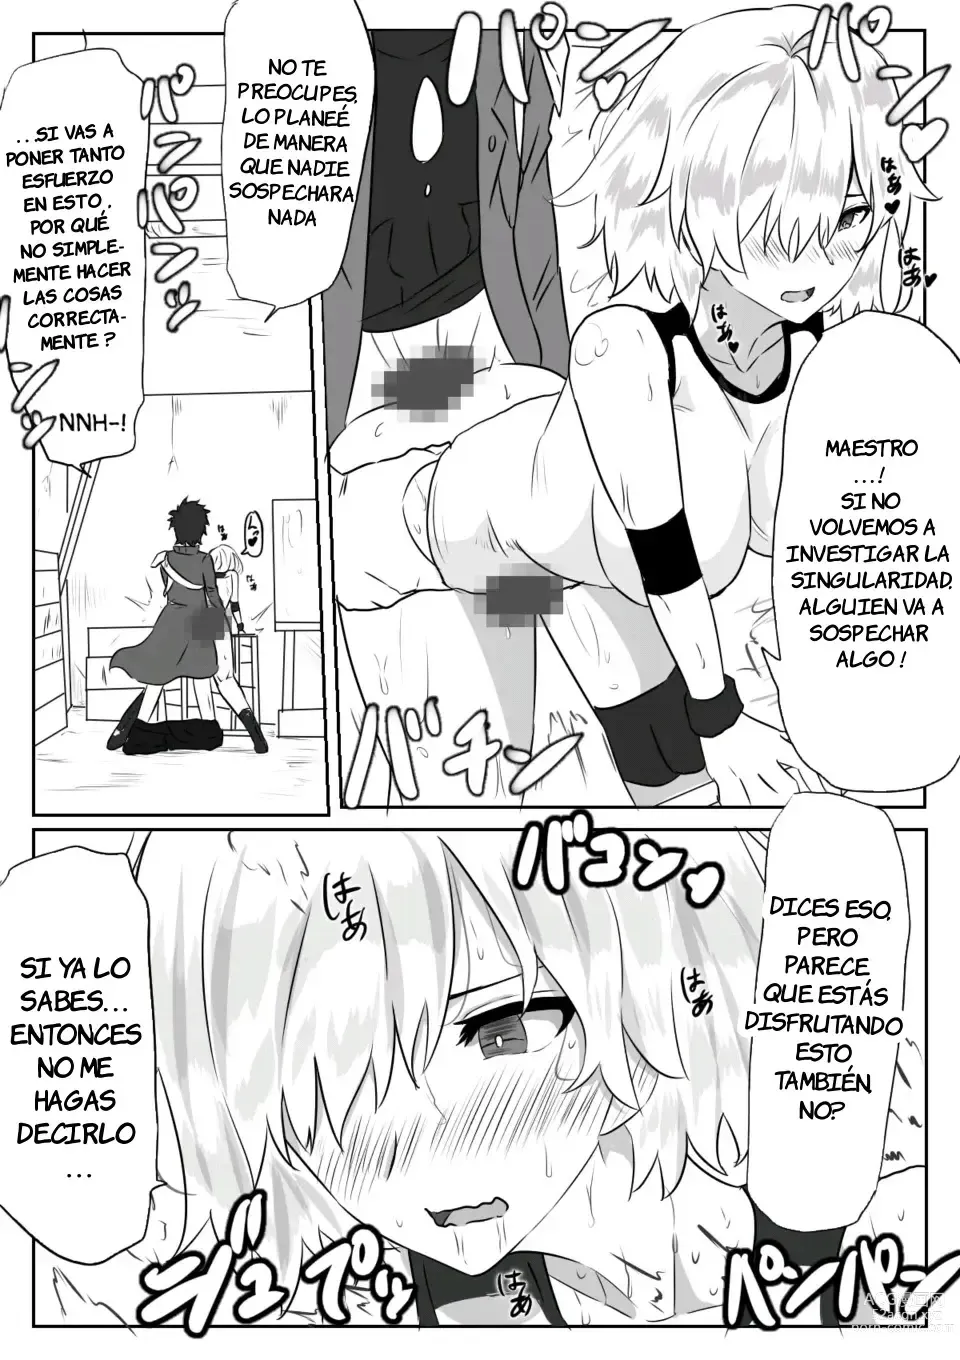 Page 2 of doujinshi Sexo silencioso con Mash